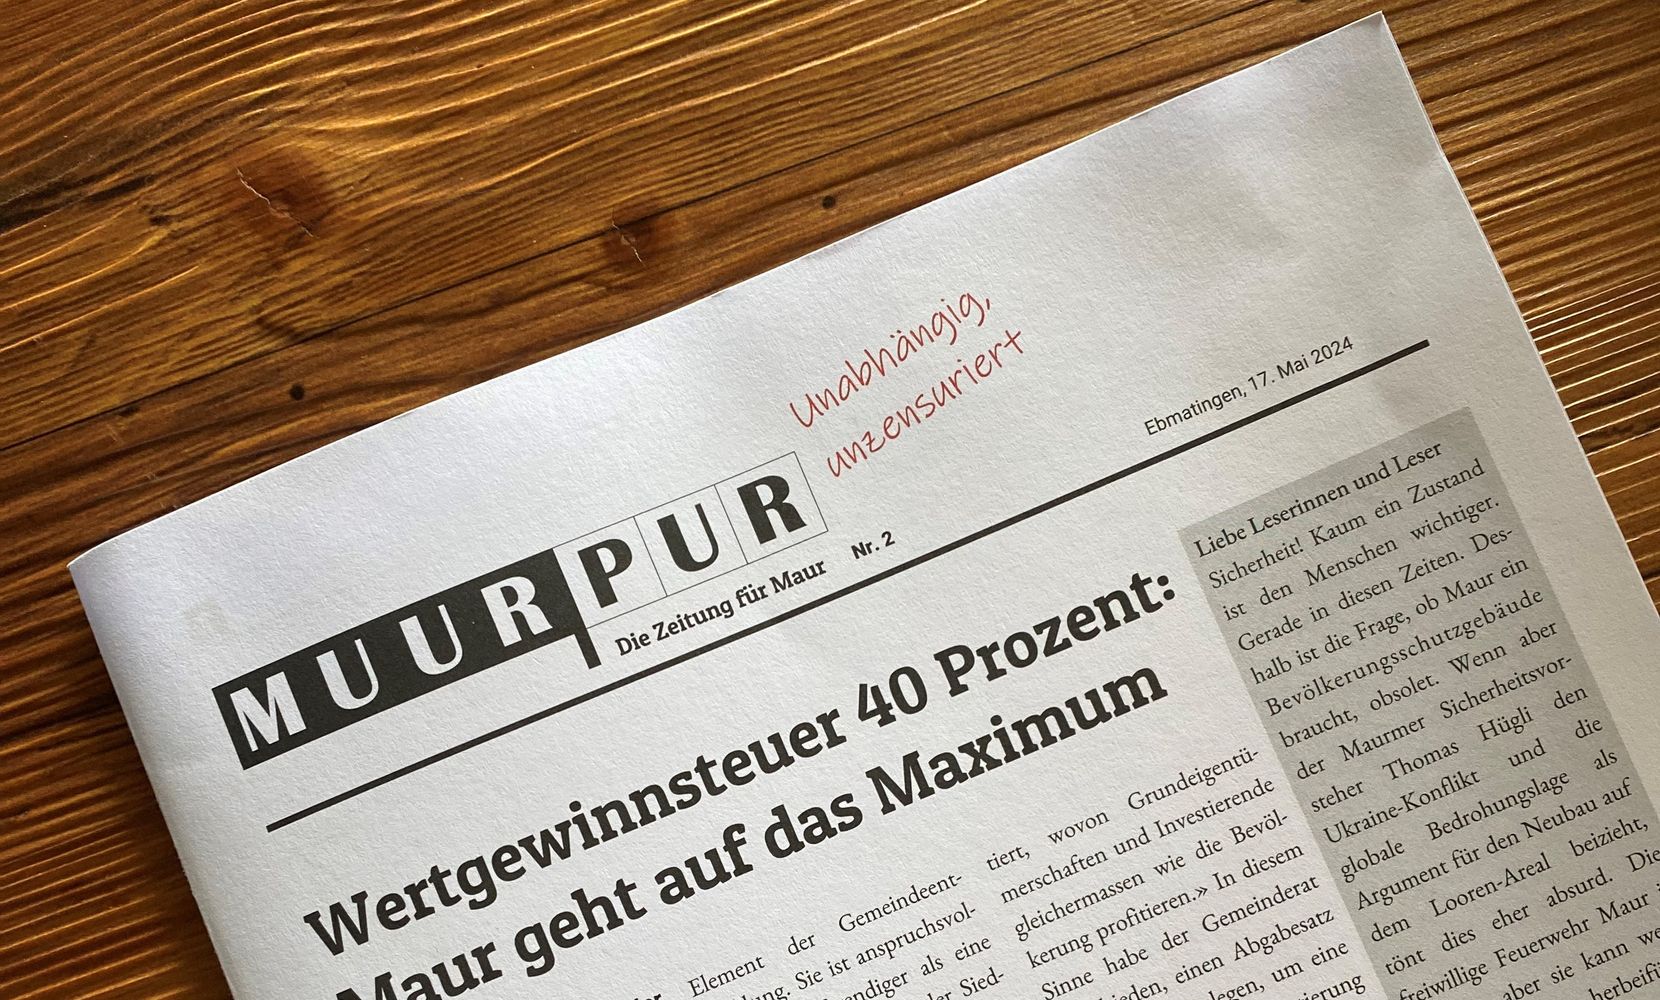 Man sieht die neue Zeitung MuurPur auf dem Tisch liegen.